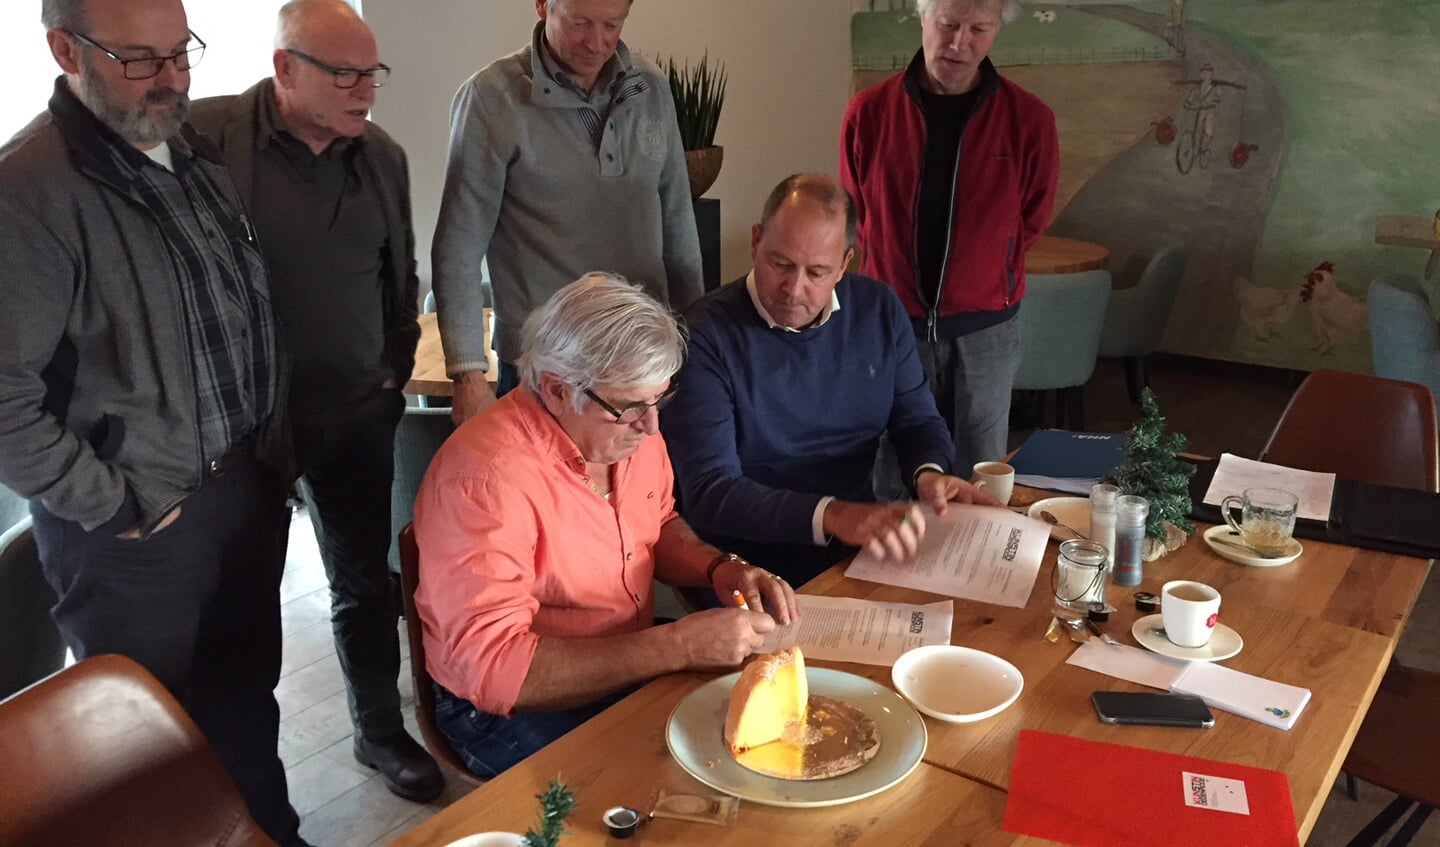 Joost van Dijk (voorzitter Kunststichting) en Piet Klaasen (voorzitter Oud-Rijsingen) tekenen de overeenkomst, de andere bestuursleden kijken kritisch toe.